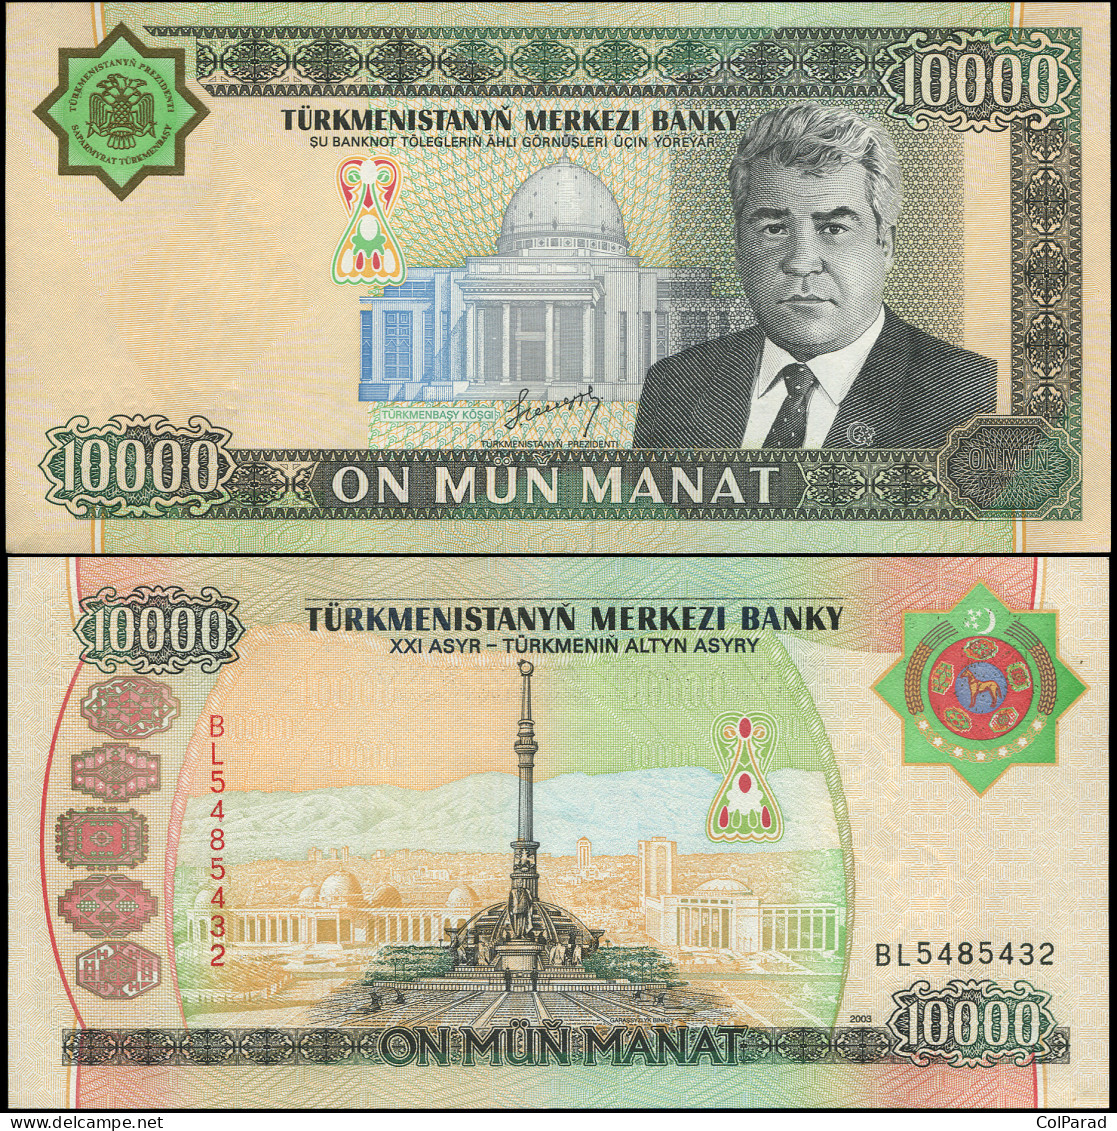 TURKMENISTAN 10000 MANAT - 2003 - Paper Unc - P.15a Banknote - Turkménistan